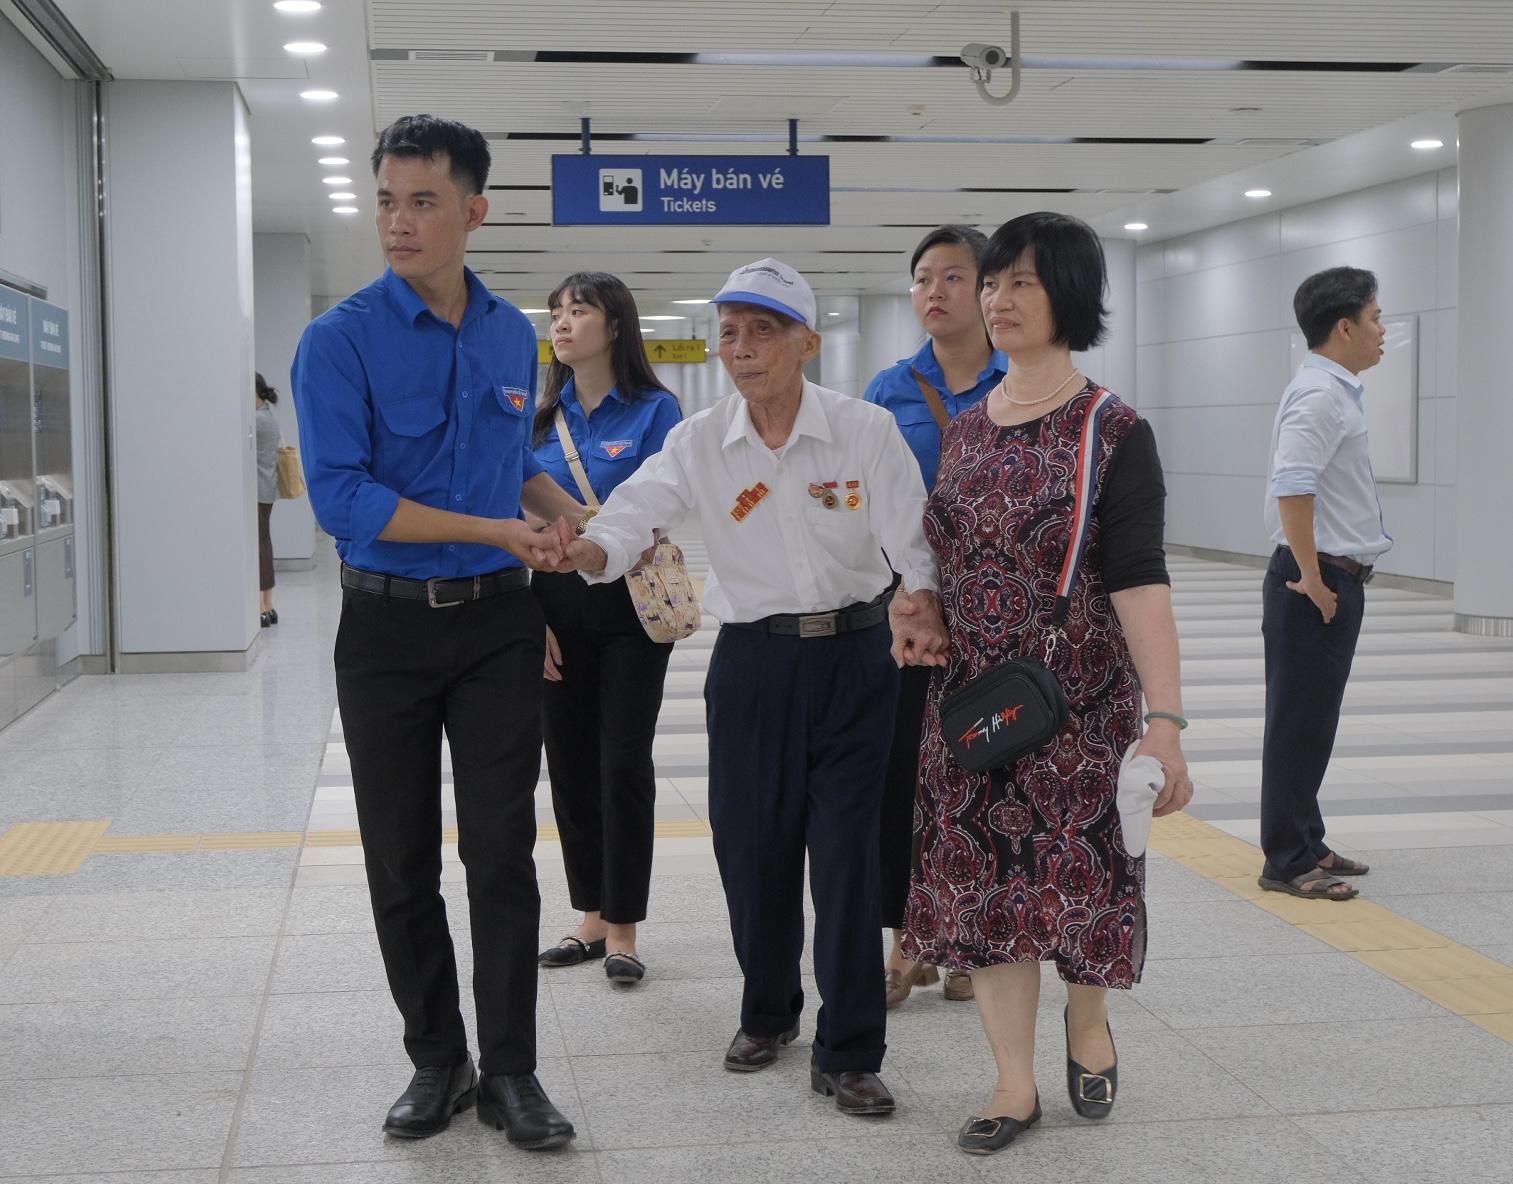 Các bạn trẻ Đoàn viên Thanh Niên đã có mặt từ rất sớm để cùng người nhà hỗ trợ các nhân chứng lịch sử của trận đánh Điện Biên Phủ trải nghiệm tuyến metro đầu tiên của TP.HCM